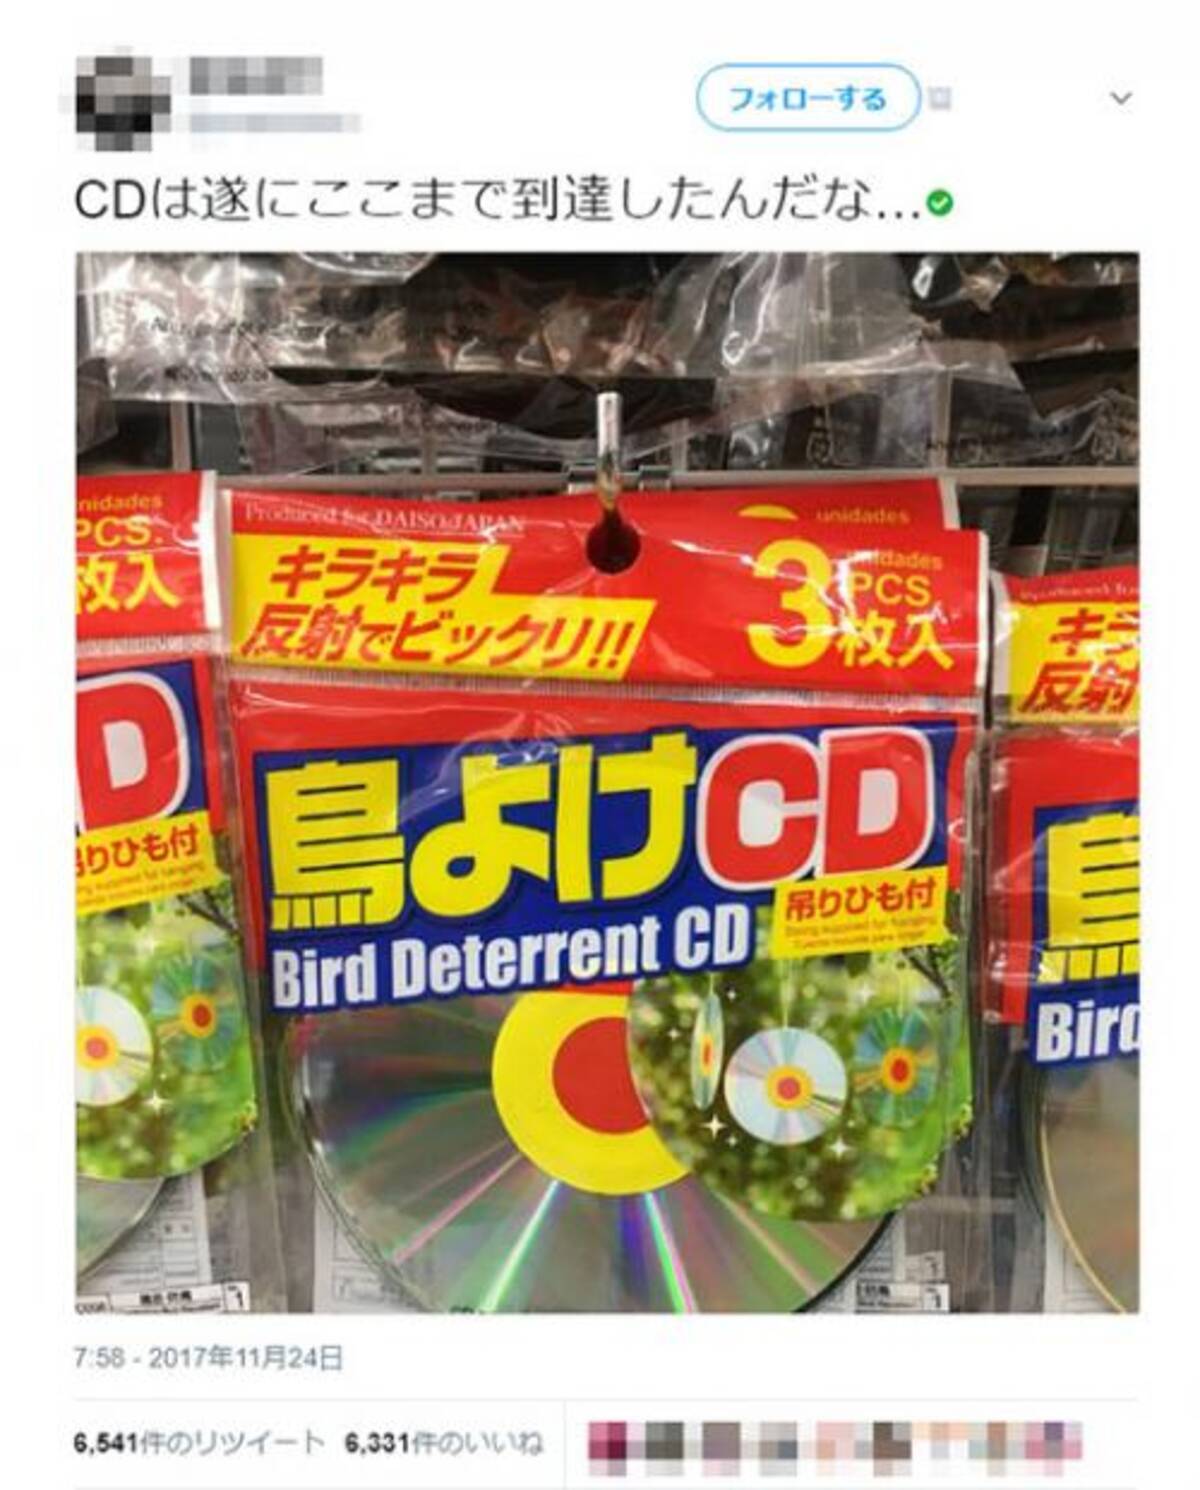 実は効果が薄い 鳥よけ用cdの存在に おわりのはじまり 廃棄cdリサイクルすればいい といった反応集まる 17年11月25日 エキサイトニュース